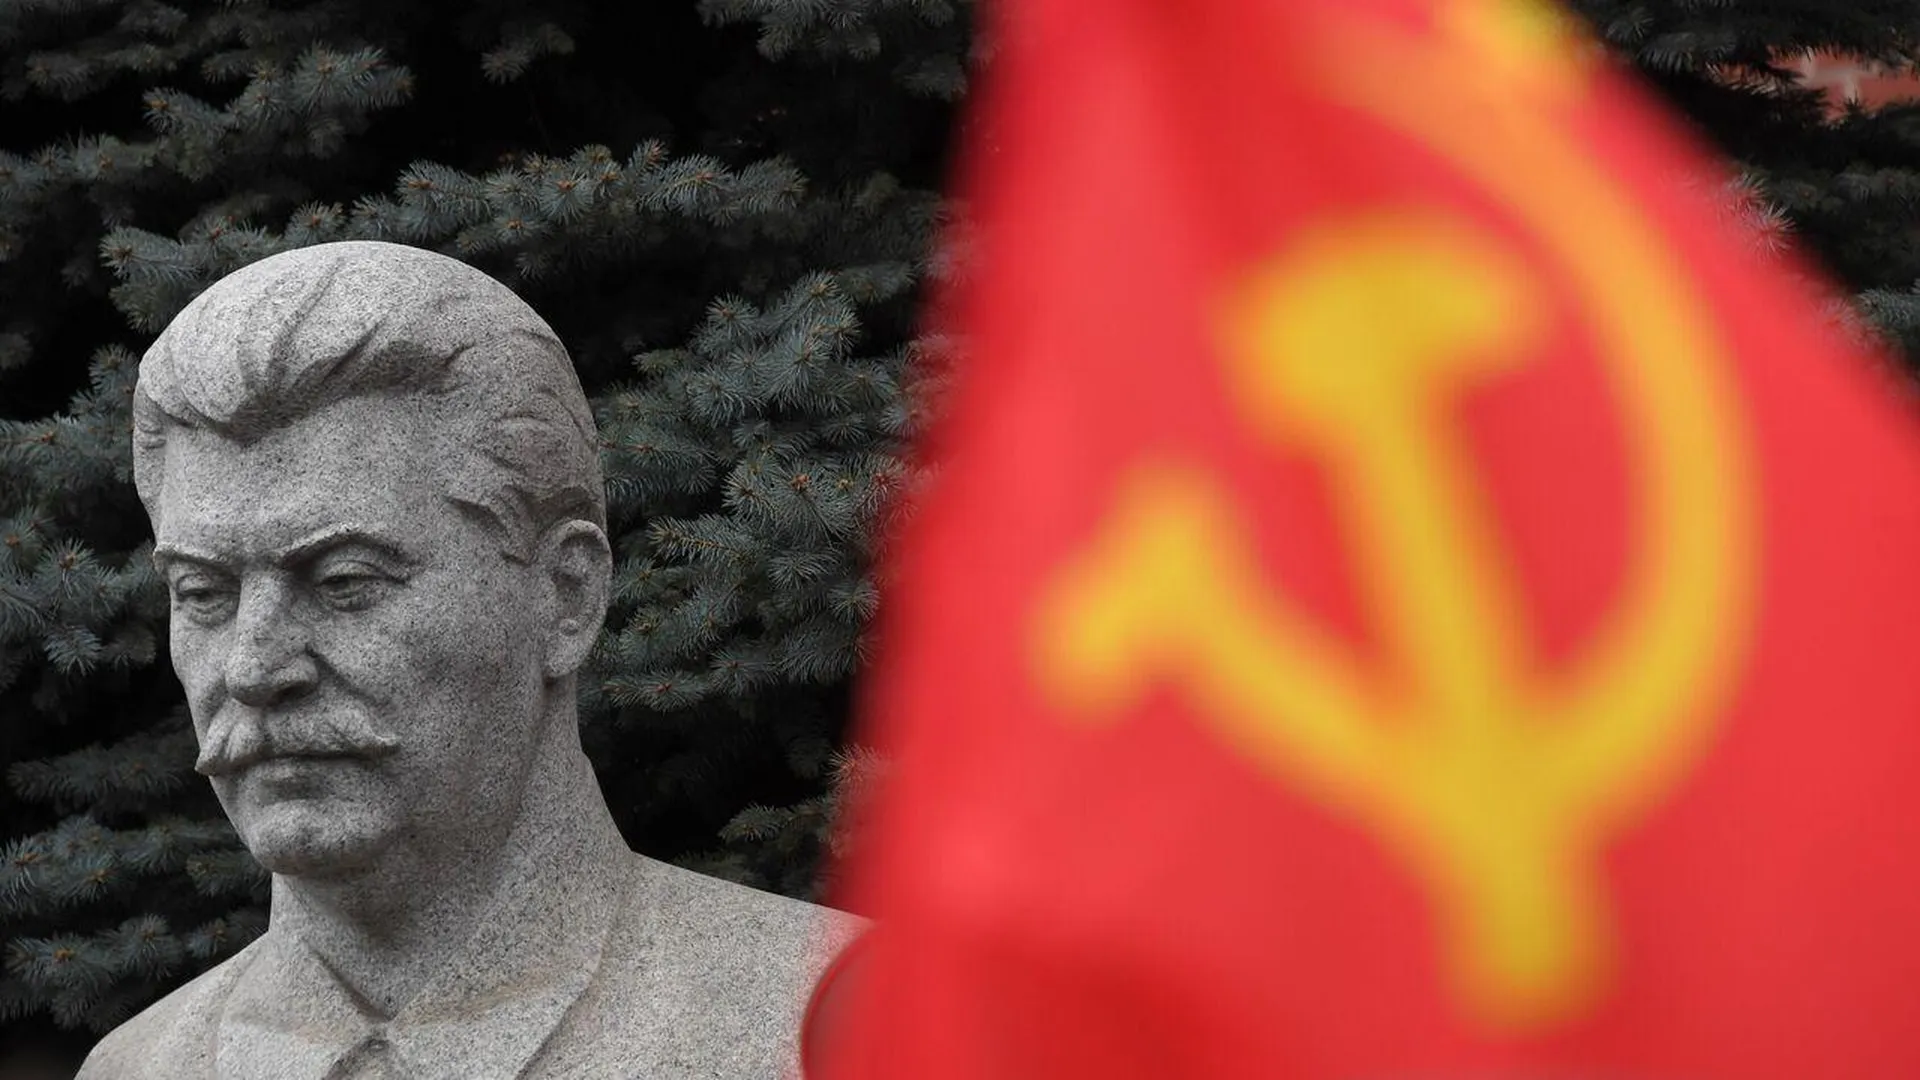 Бюст Сталина появился в детском парке в Орлове. Мнение жителей никто не спрашивал